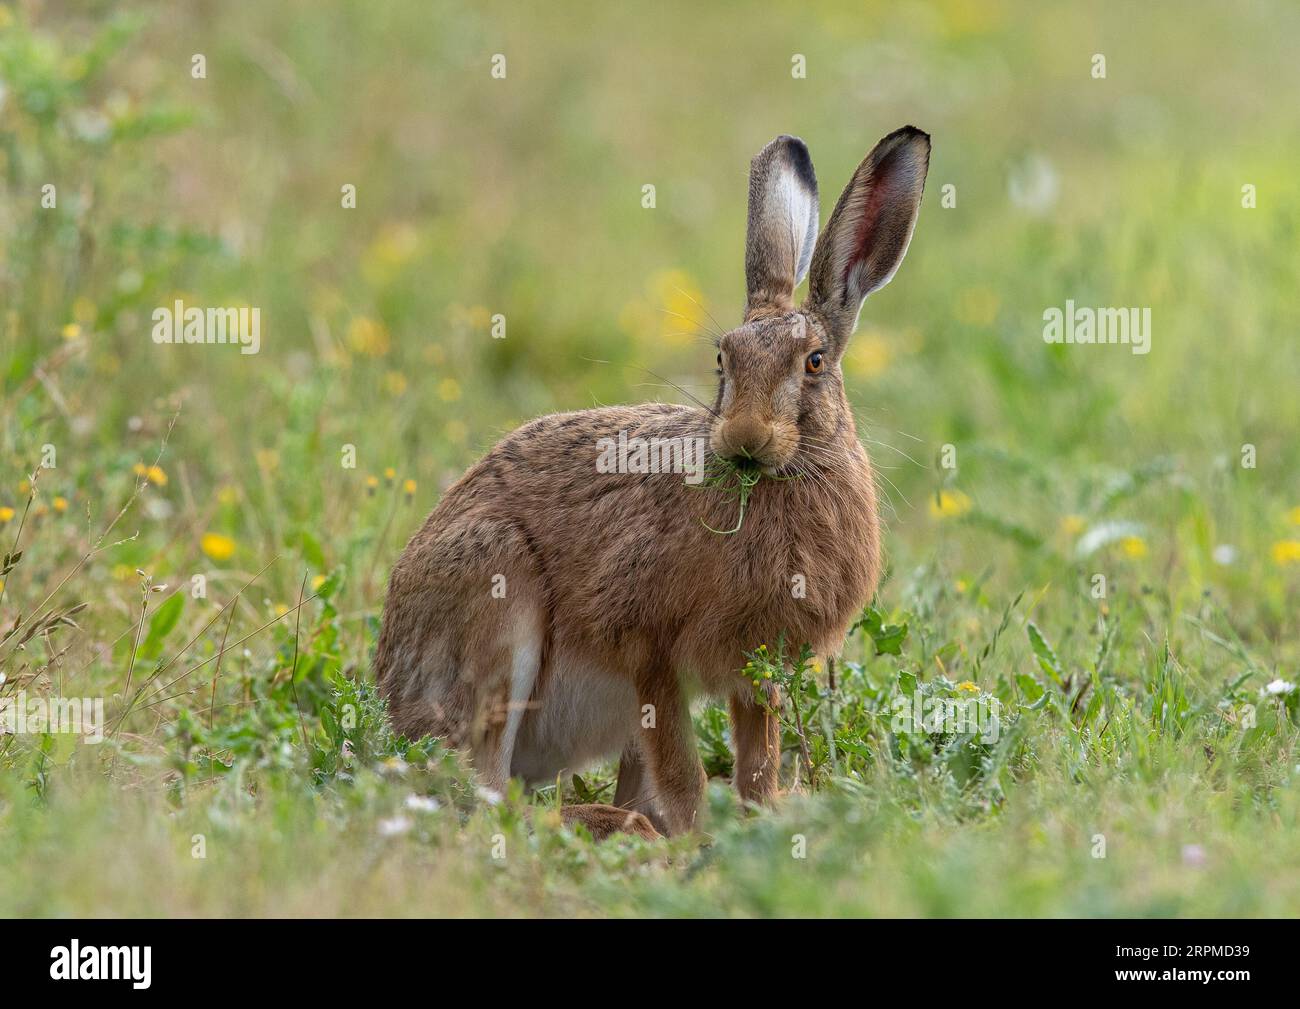 Un gros lièvre brun sain assis grignotant sur la marge du champ, , montrant les détails de son oeil orange, de ses grandes oreilles et de sa fourrure brune tachetée - Suffolk, Royaume-Uni Banque D'Images